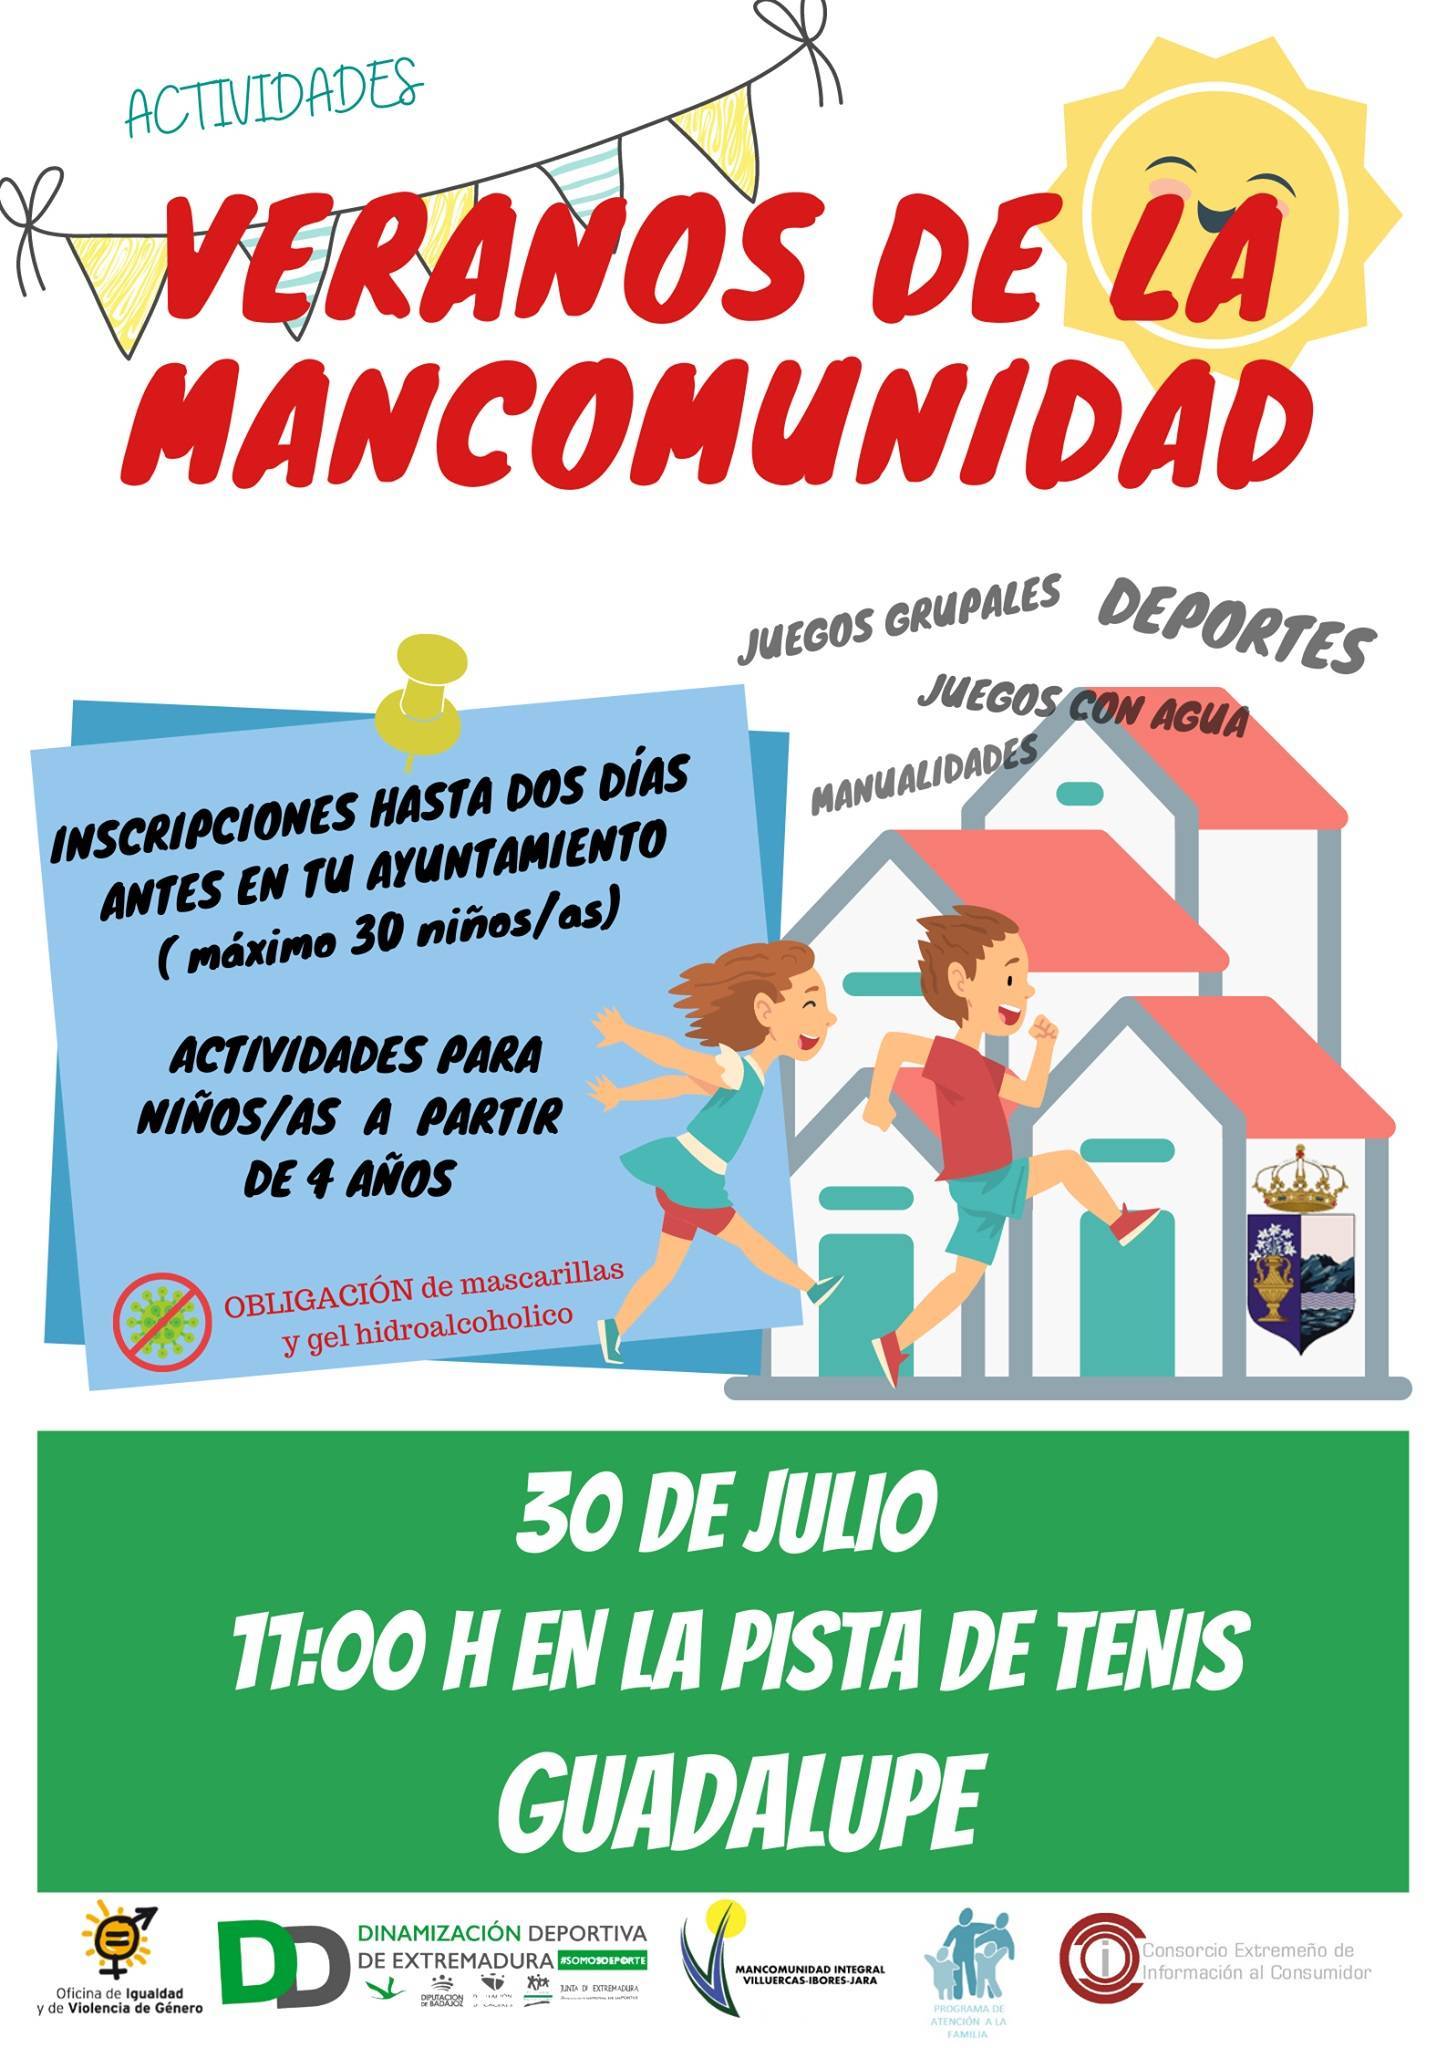 Veranos de la Mancomunidad (2021) - Guadalupe (Cáceres)